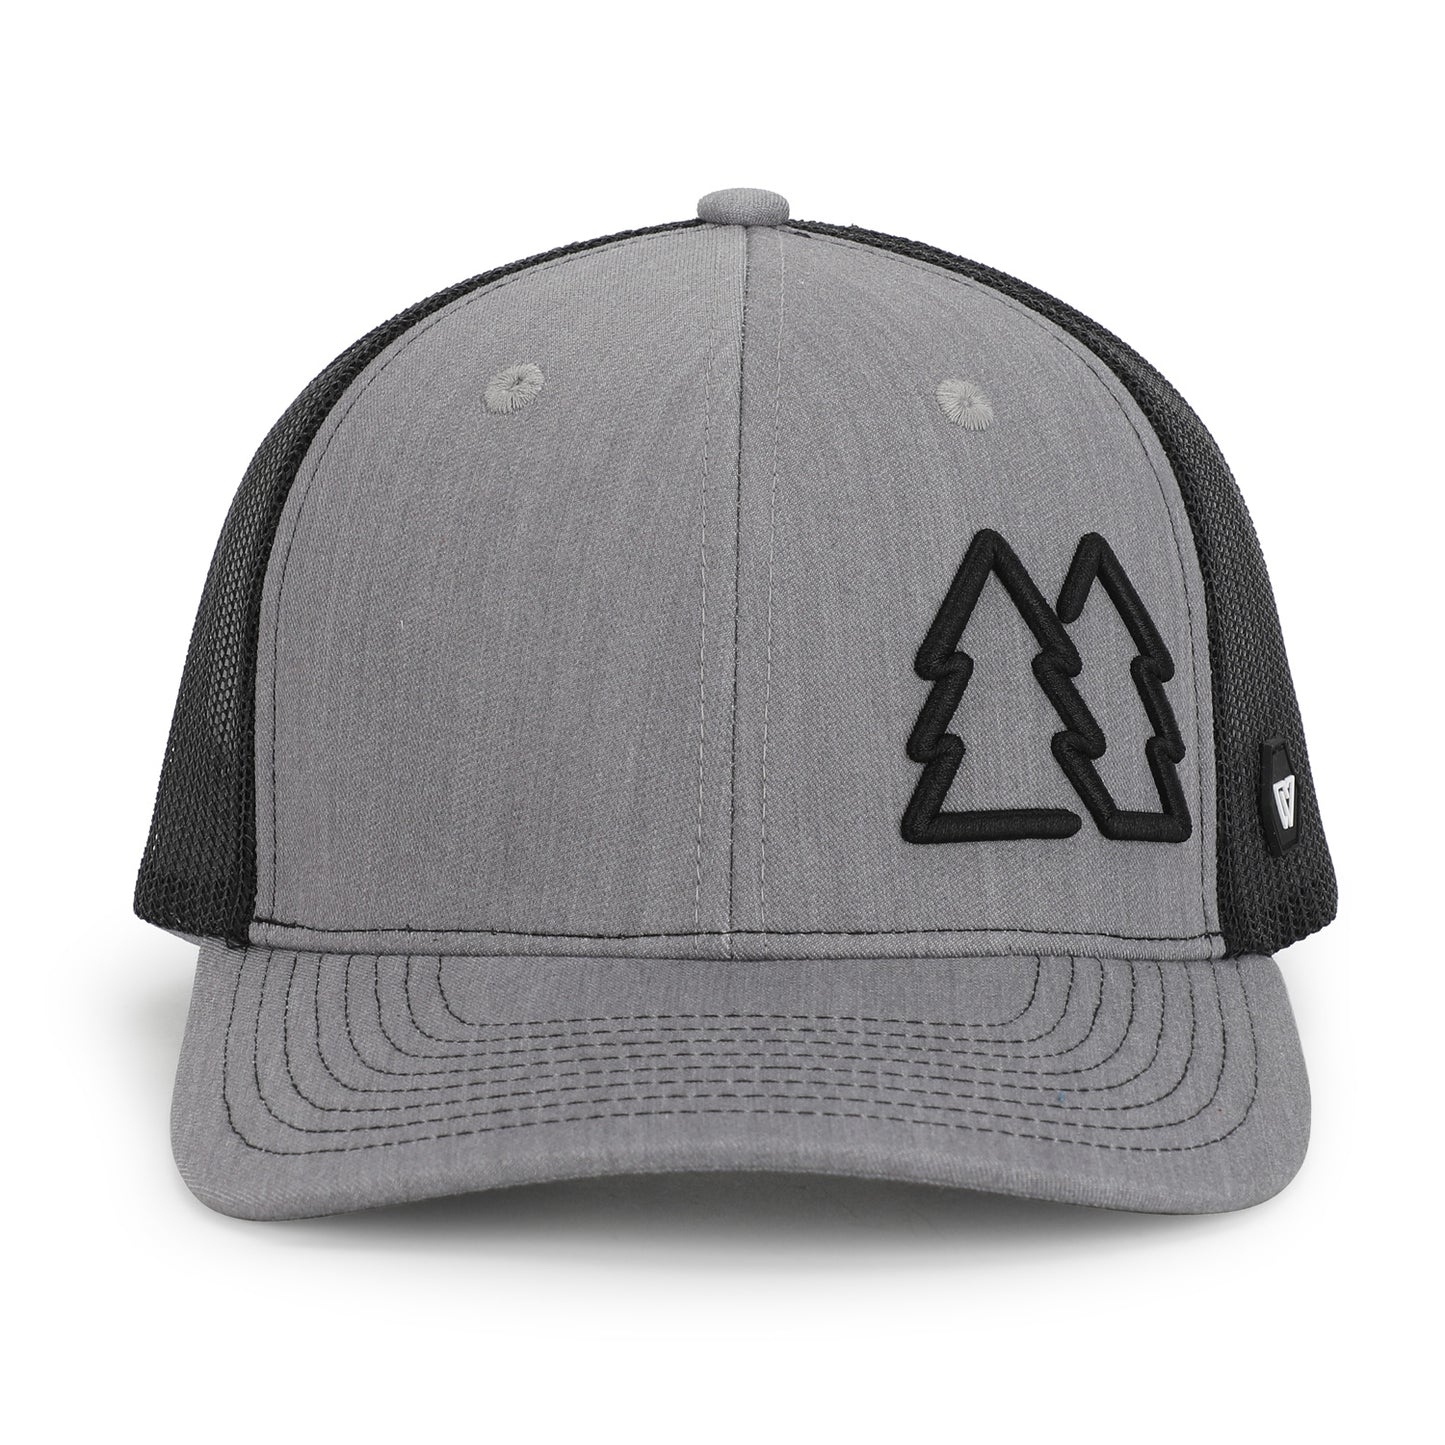 Pines - Trucker Hat